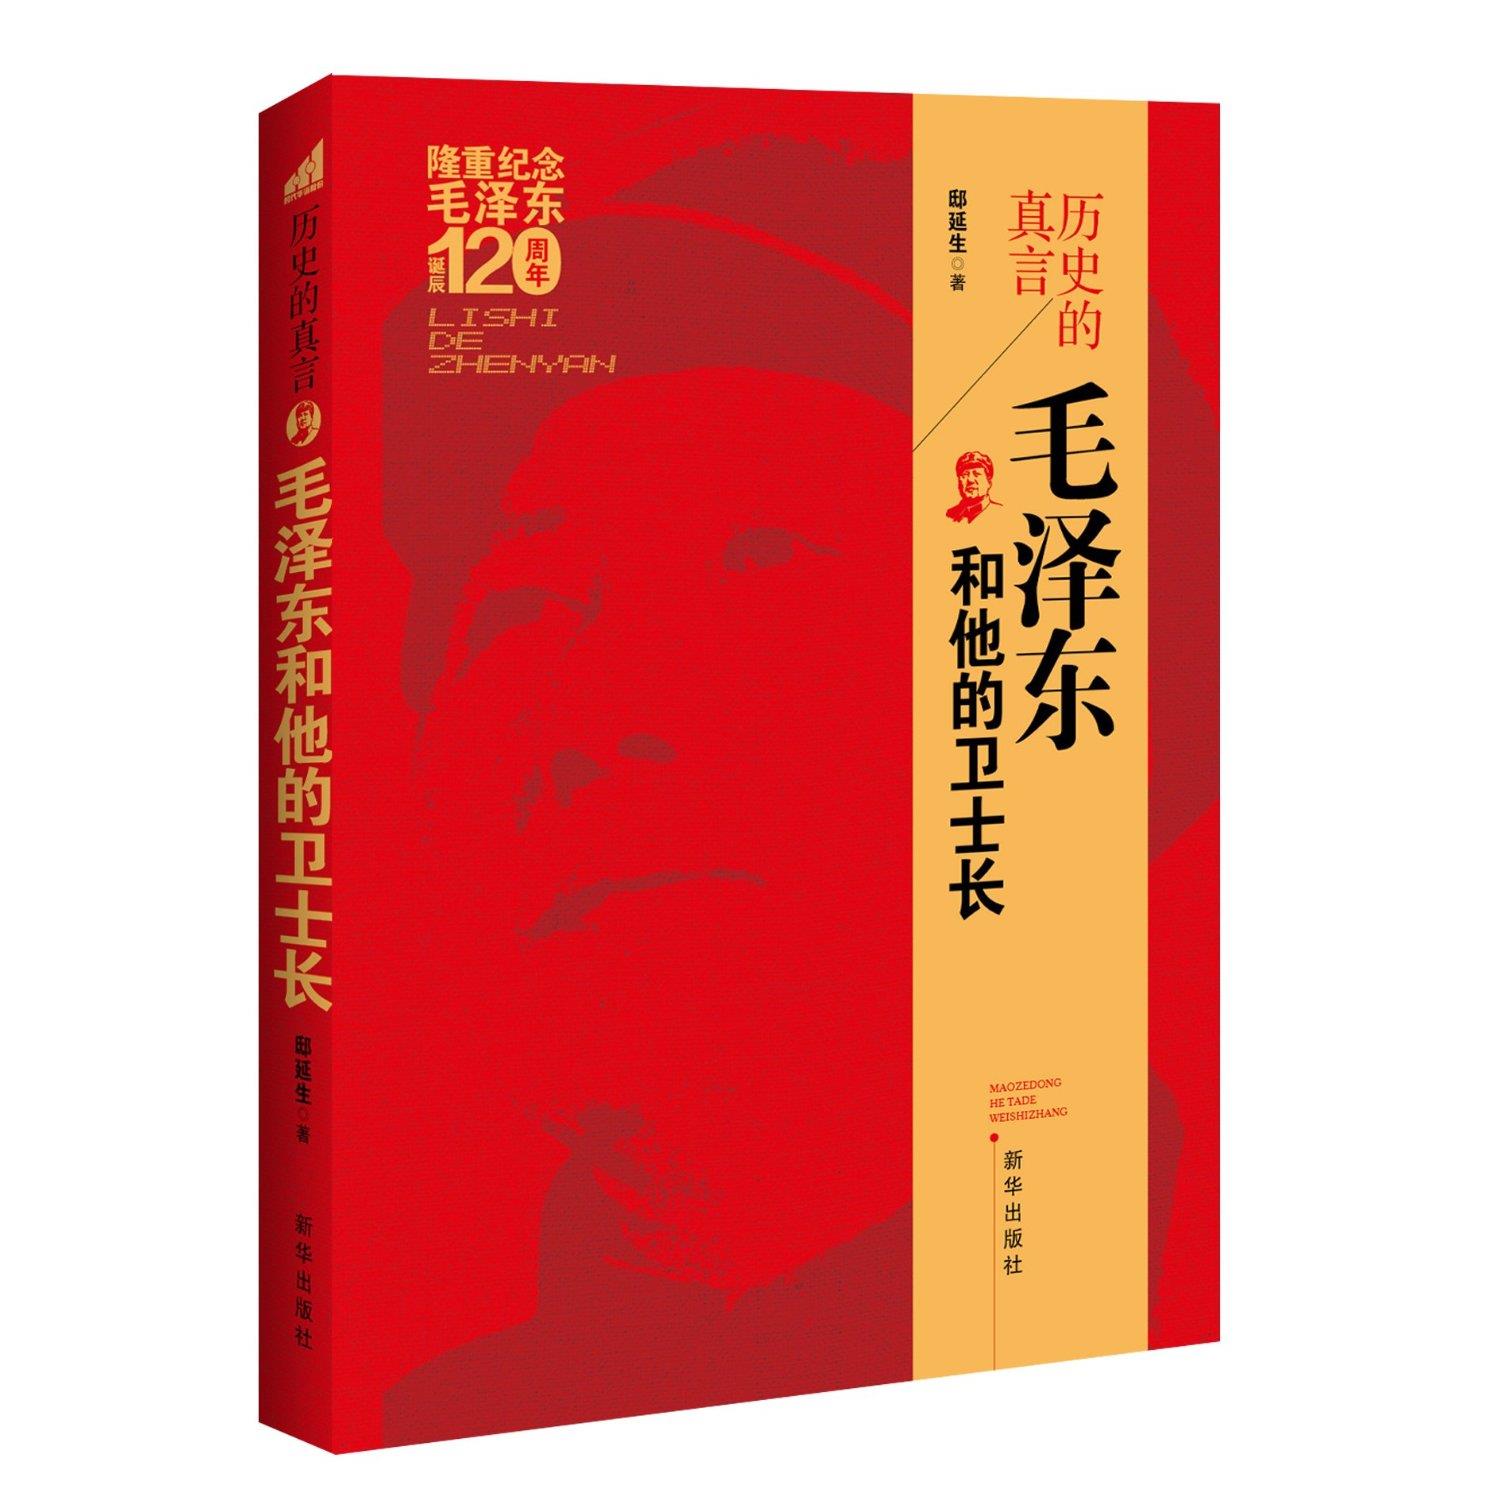 历史的真言:毛泽东和他的卫士长 邸延生著 新华出版社